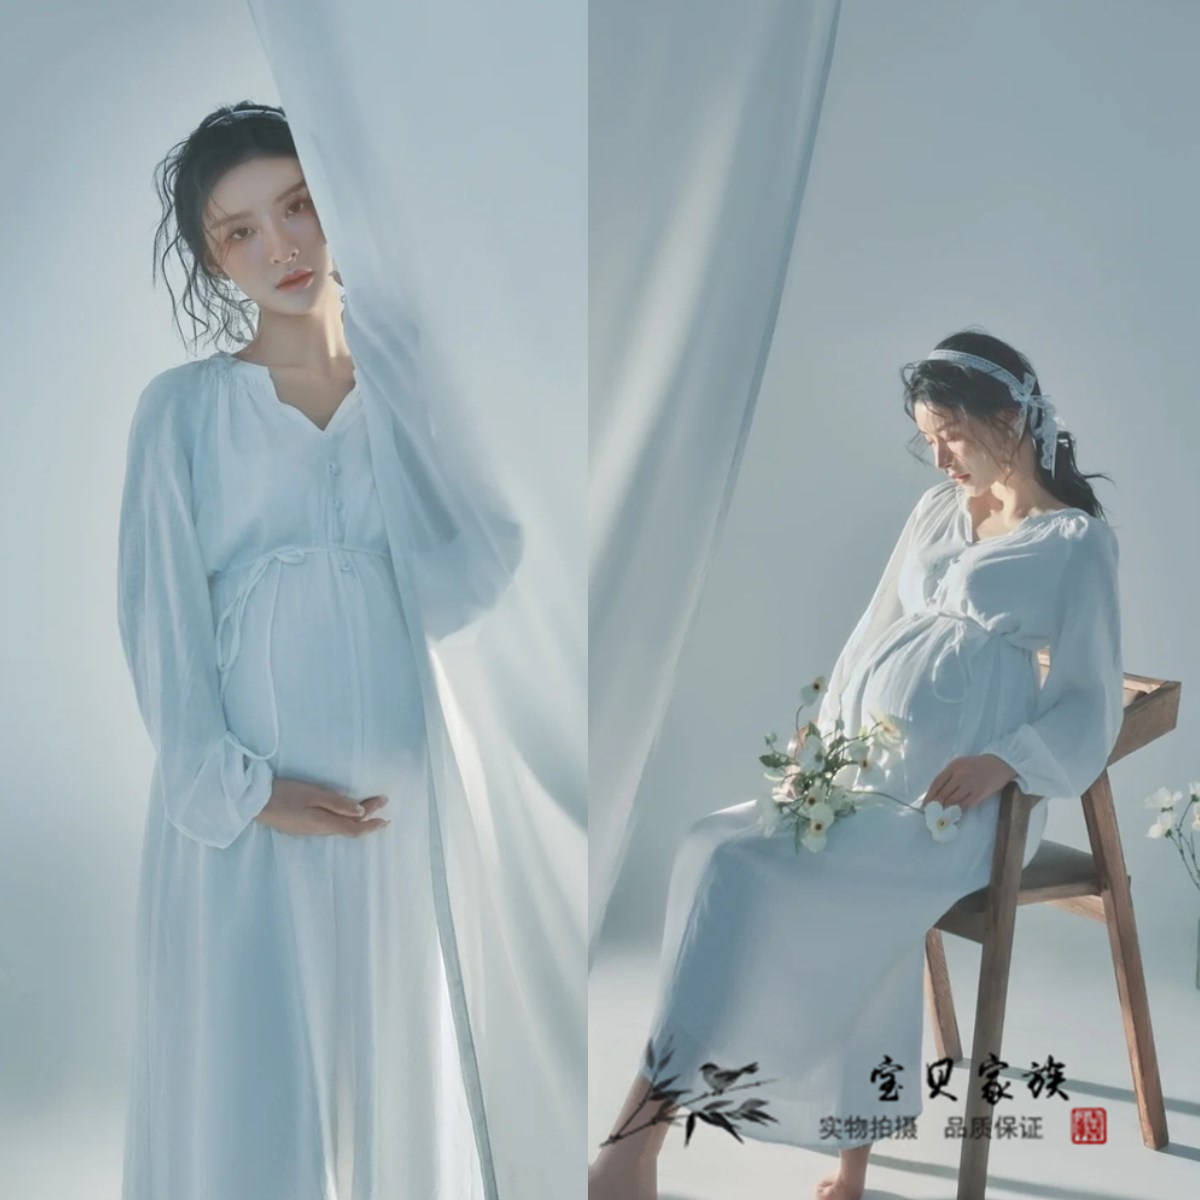 新款孕妇拍照服装影楼白色简洁唯美孕妇连衣裙大肚妈咪摄影艺术照